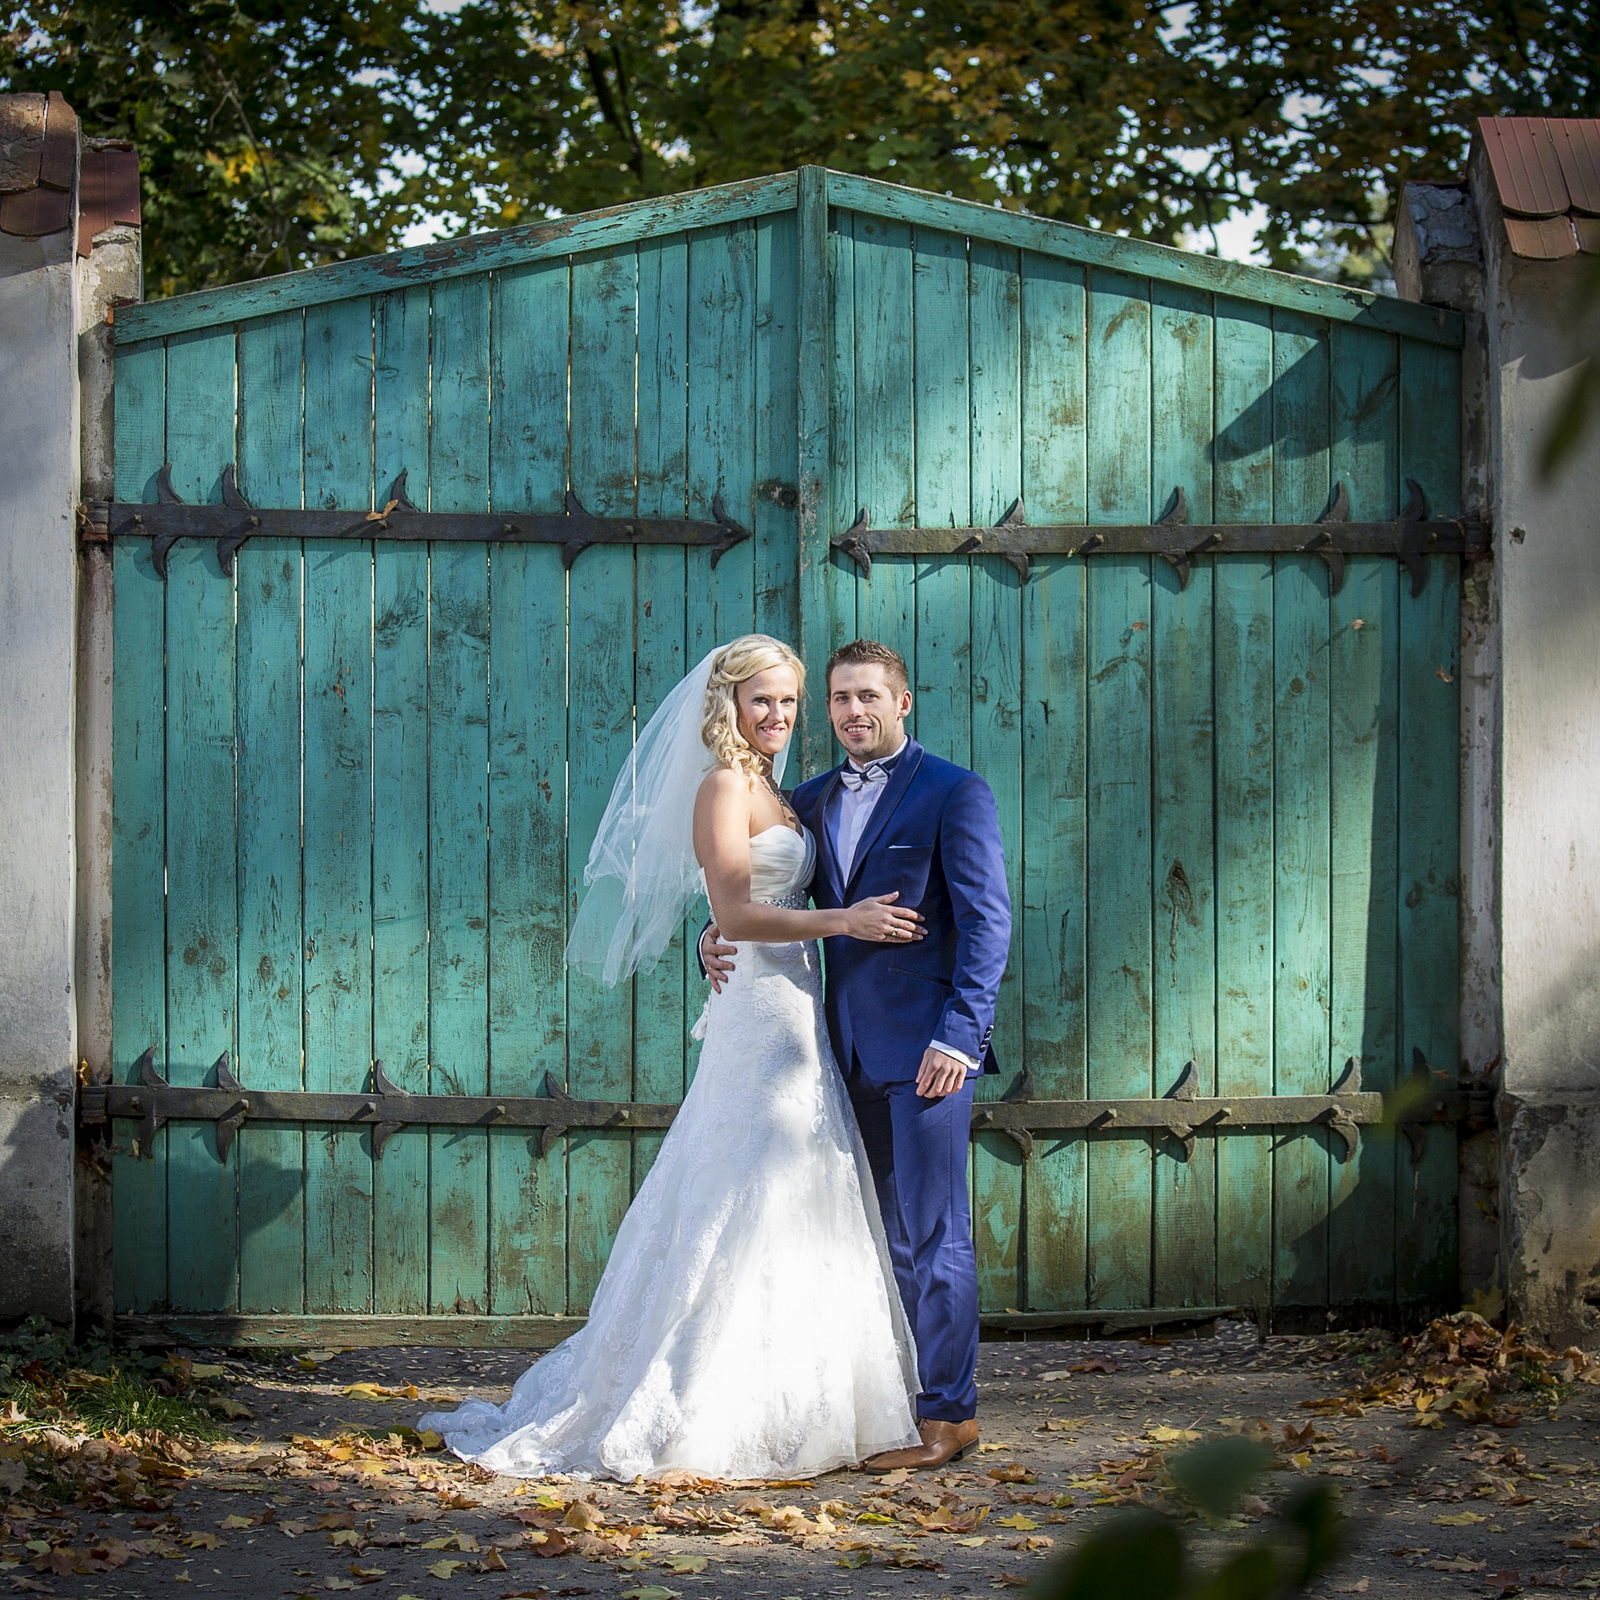 Sesja plenerowa Łódź - przepiękne zdjęcia ślubne